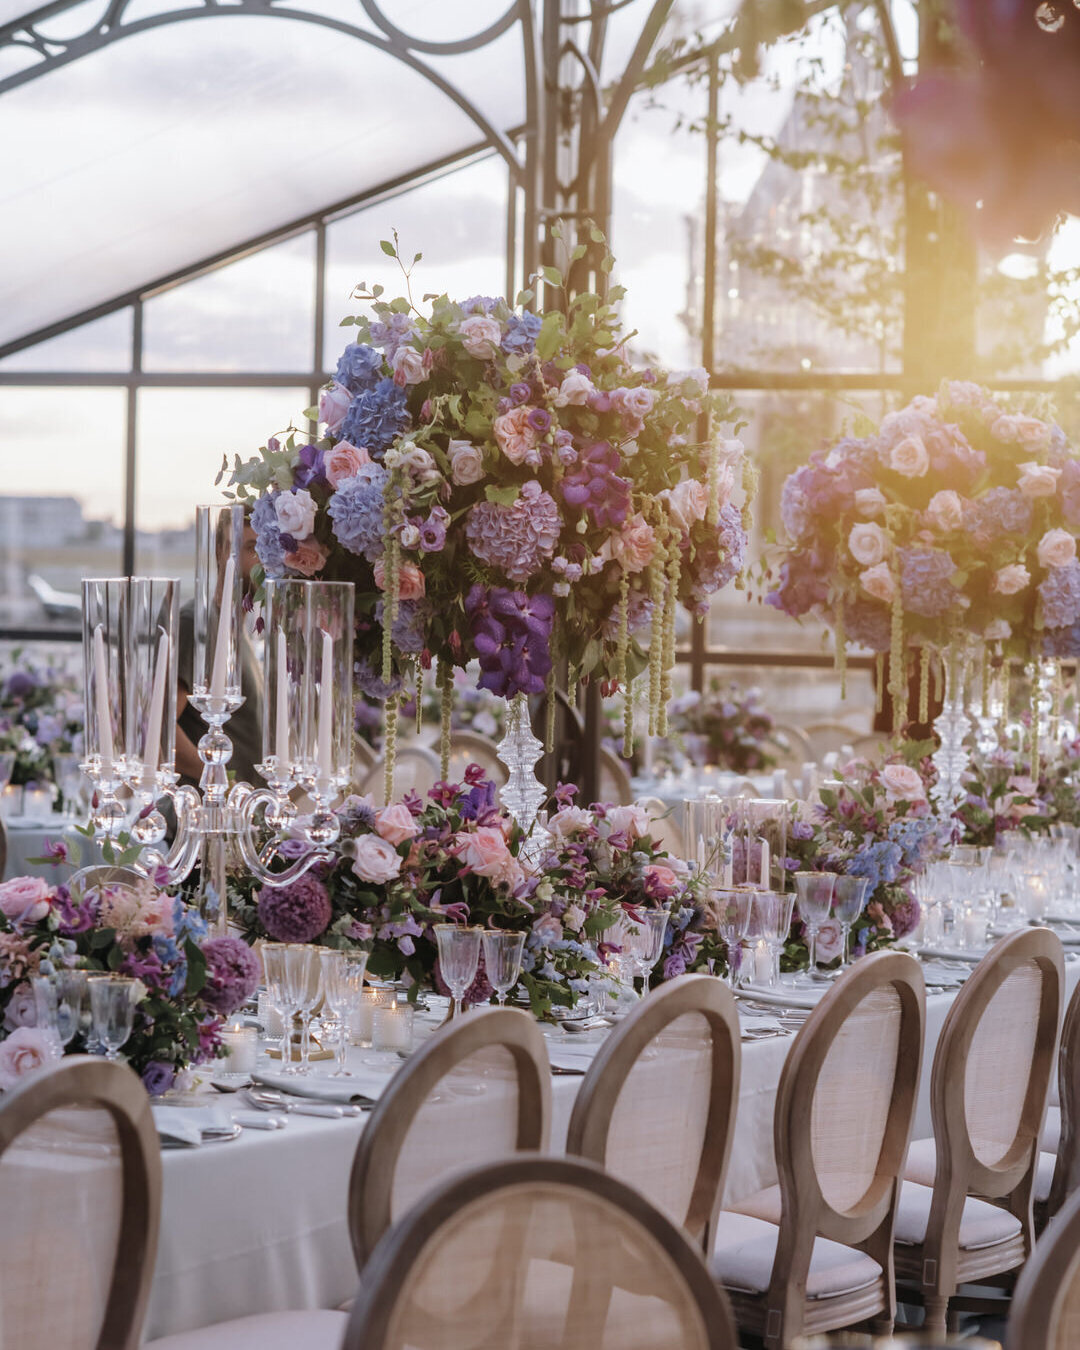 Paris Destination Wedding at Chateau de Chantilly by Alejandra Poupel Events close up big dinner table